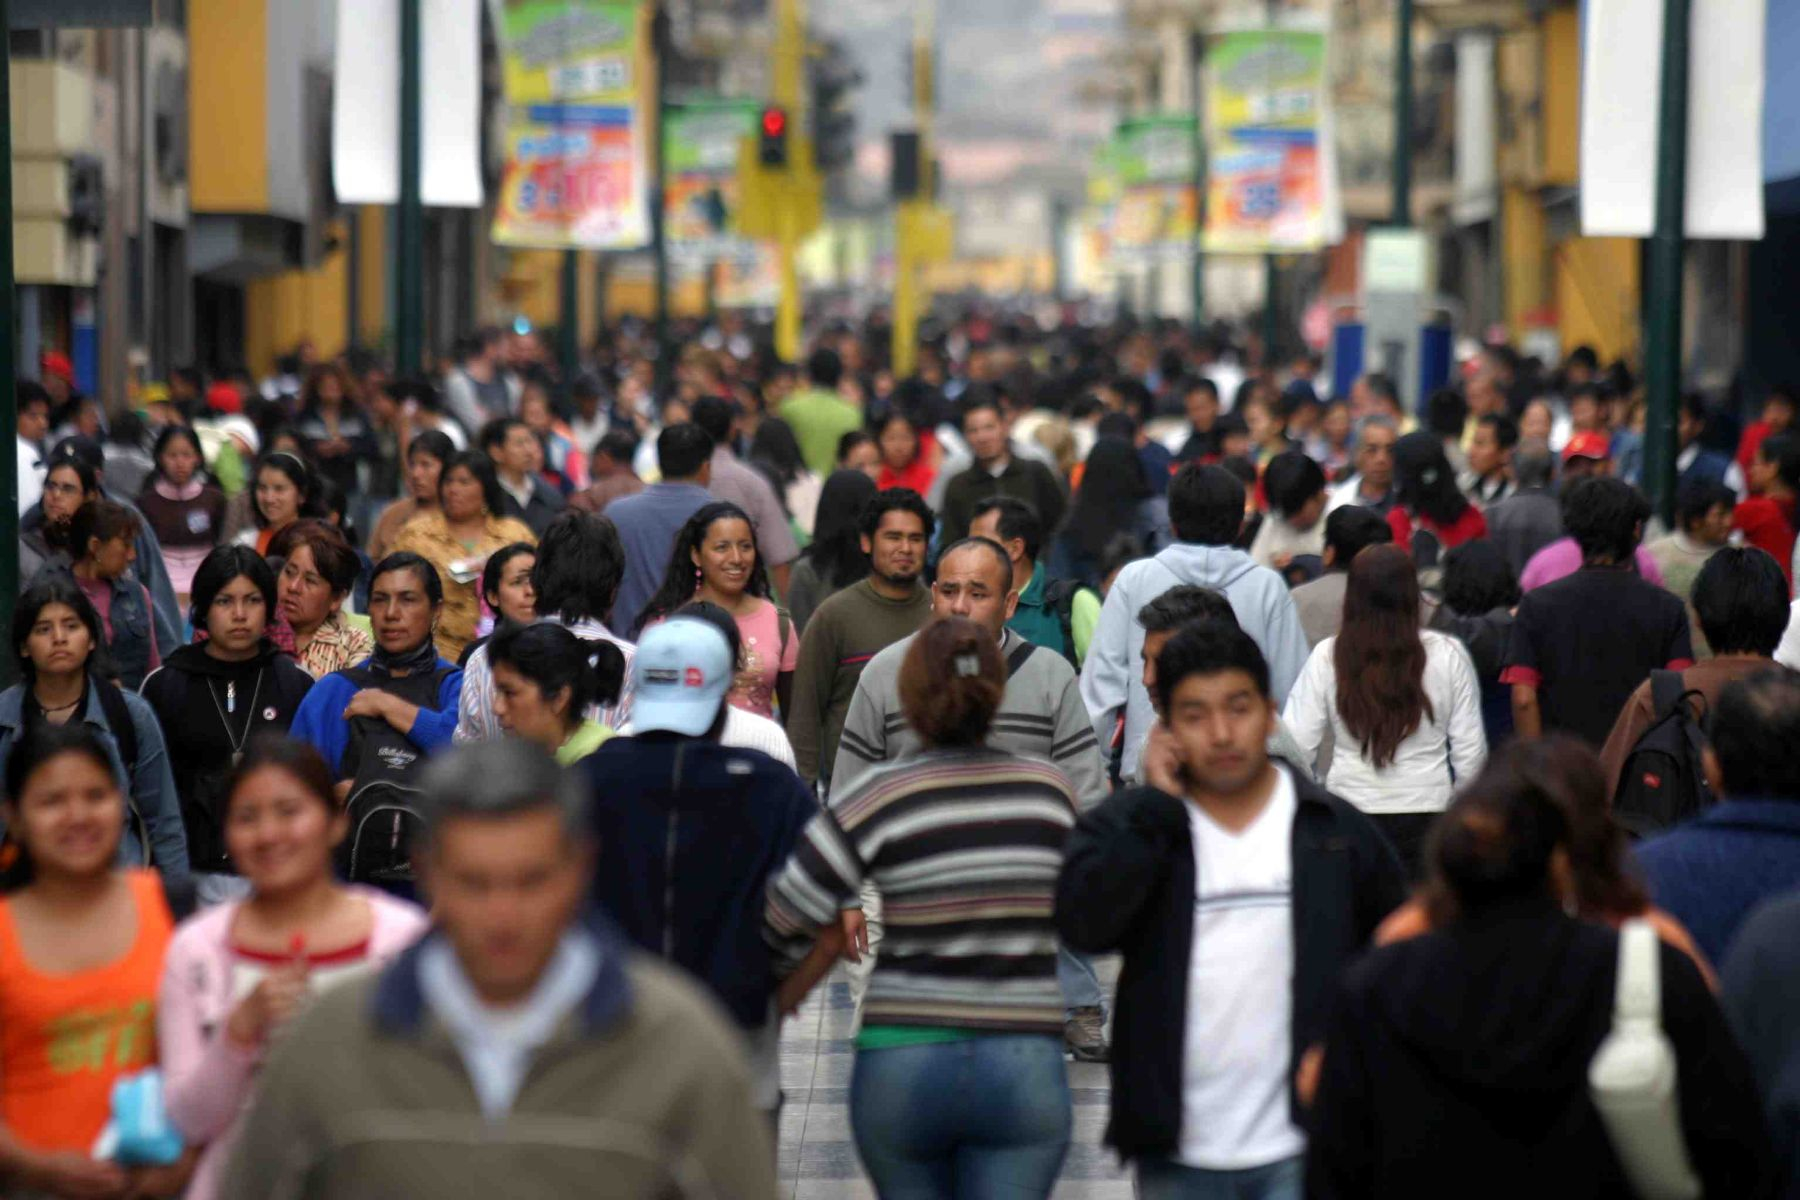 Perú, INEI, inei, perú, Lima, segundo departamento más poblado